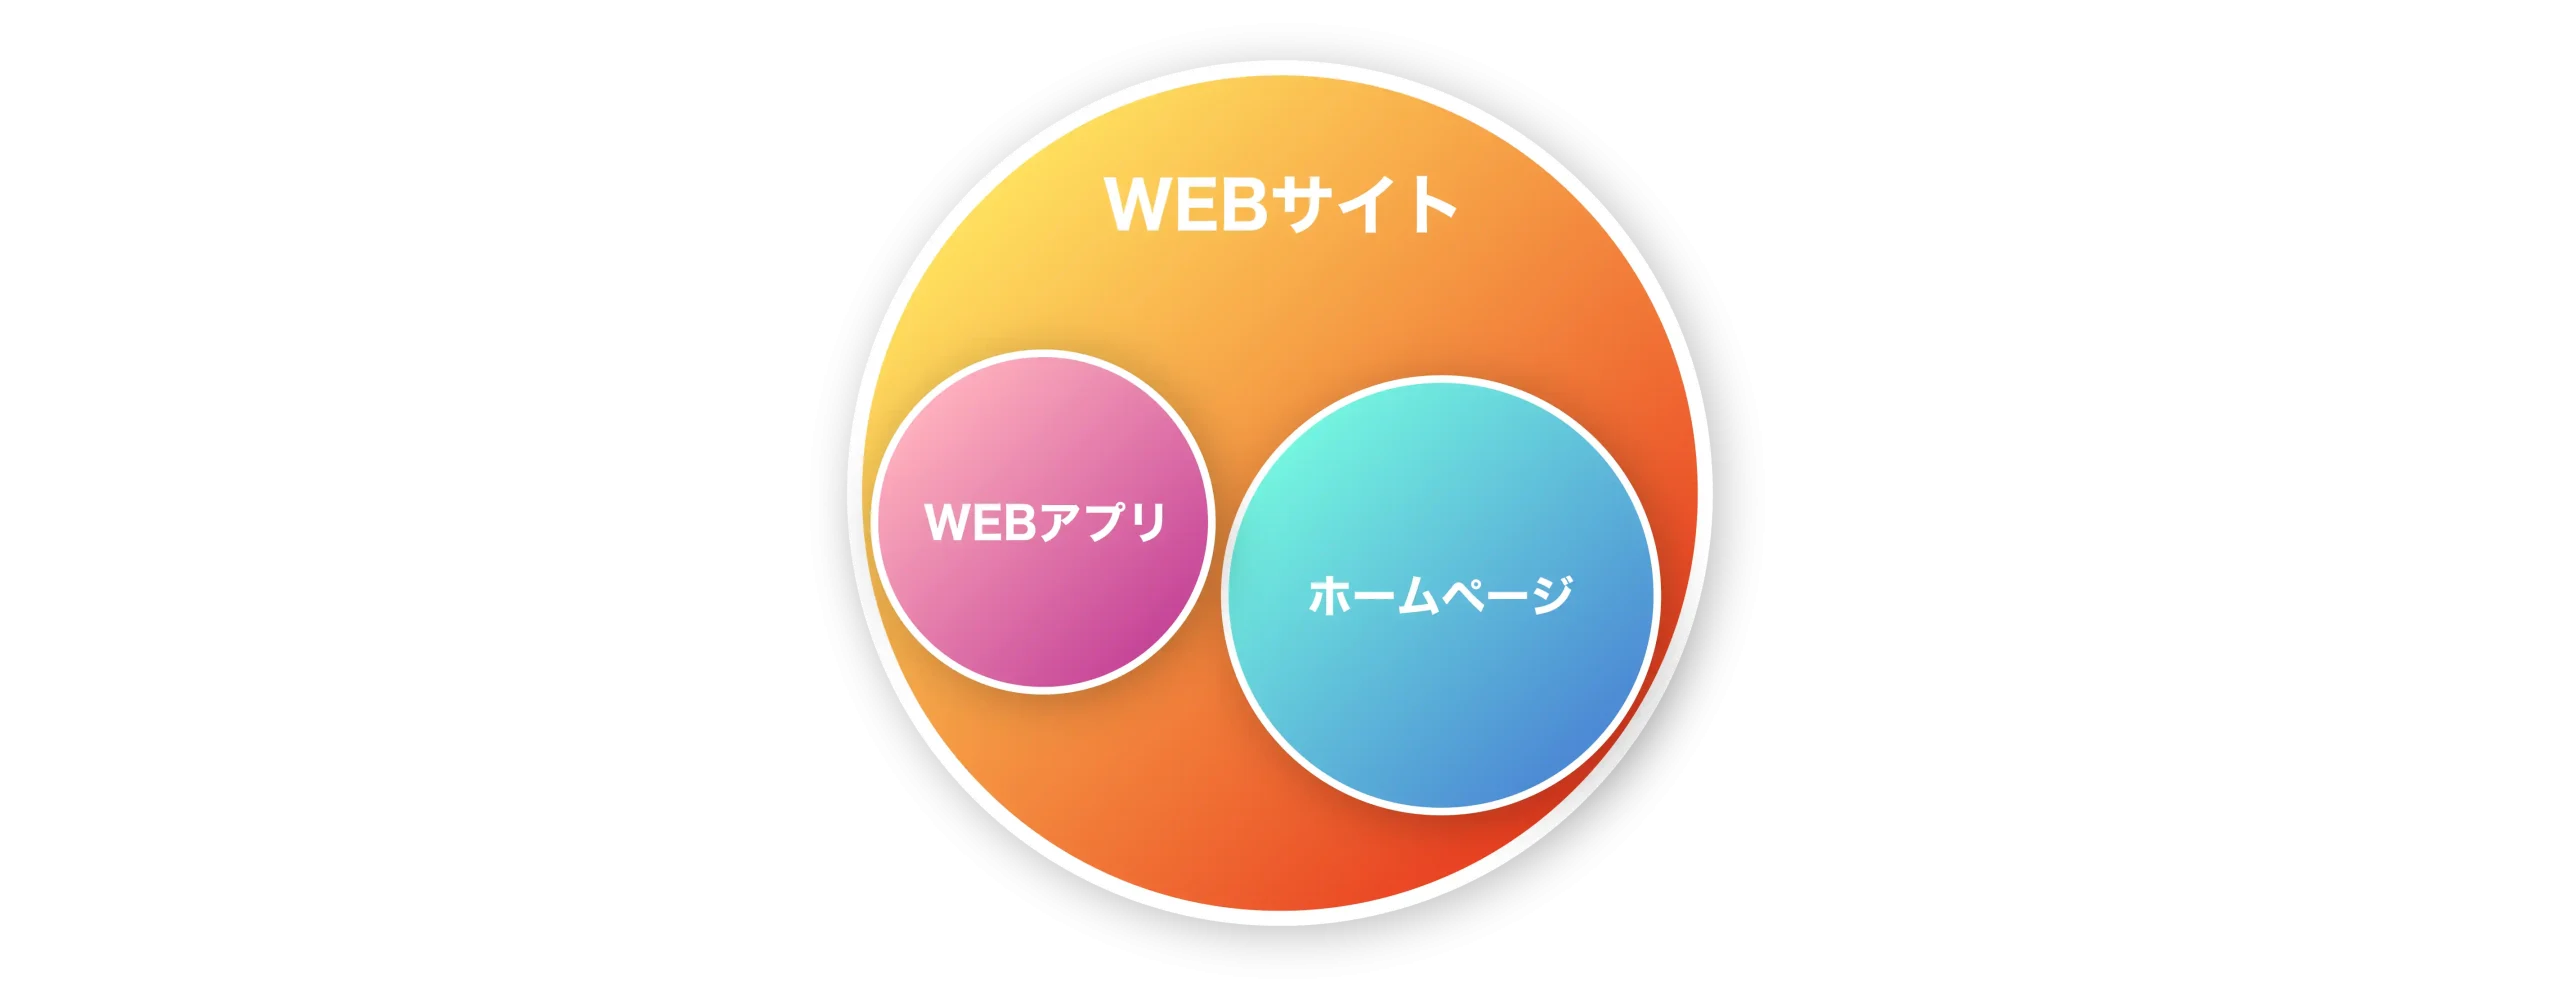 WEBサイトの中にWEBアプリケーションやホームページが含まれます。